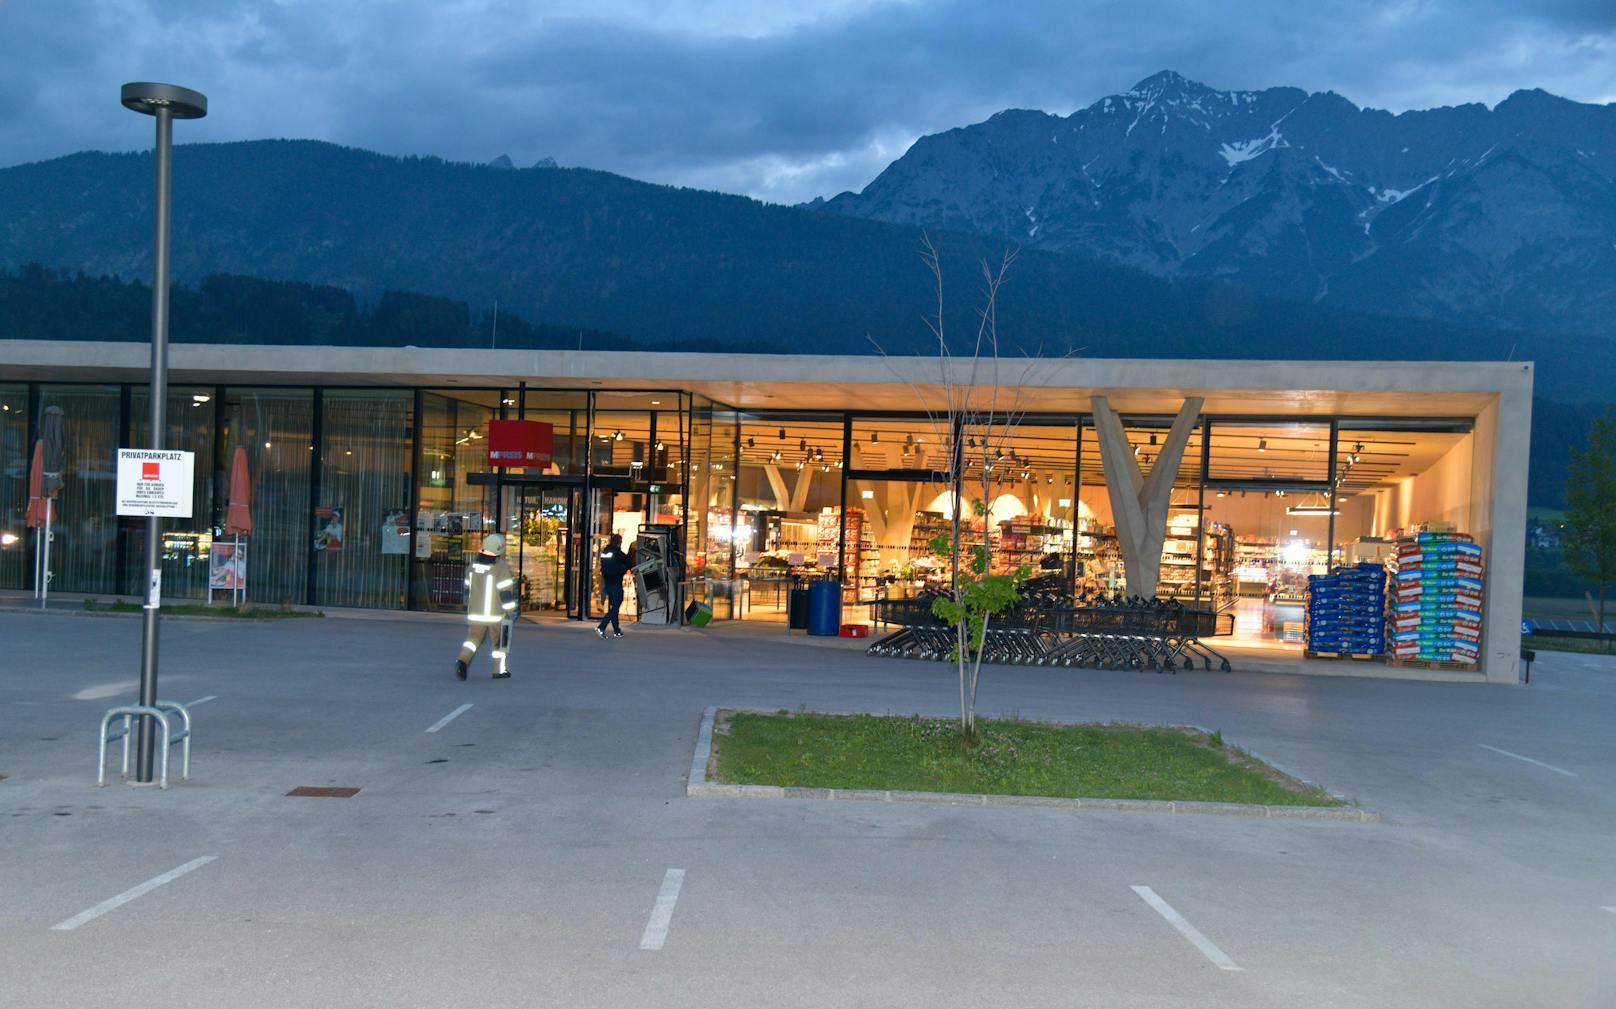 Bankomat im Tiroler Weer gesprengt